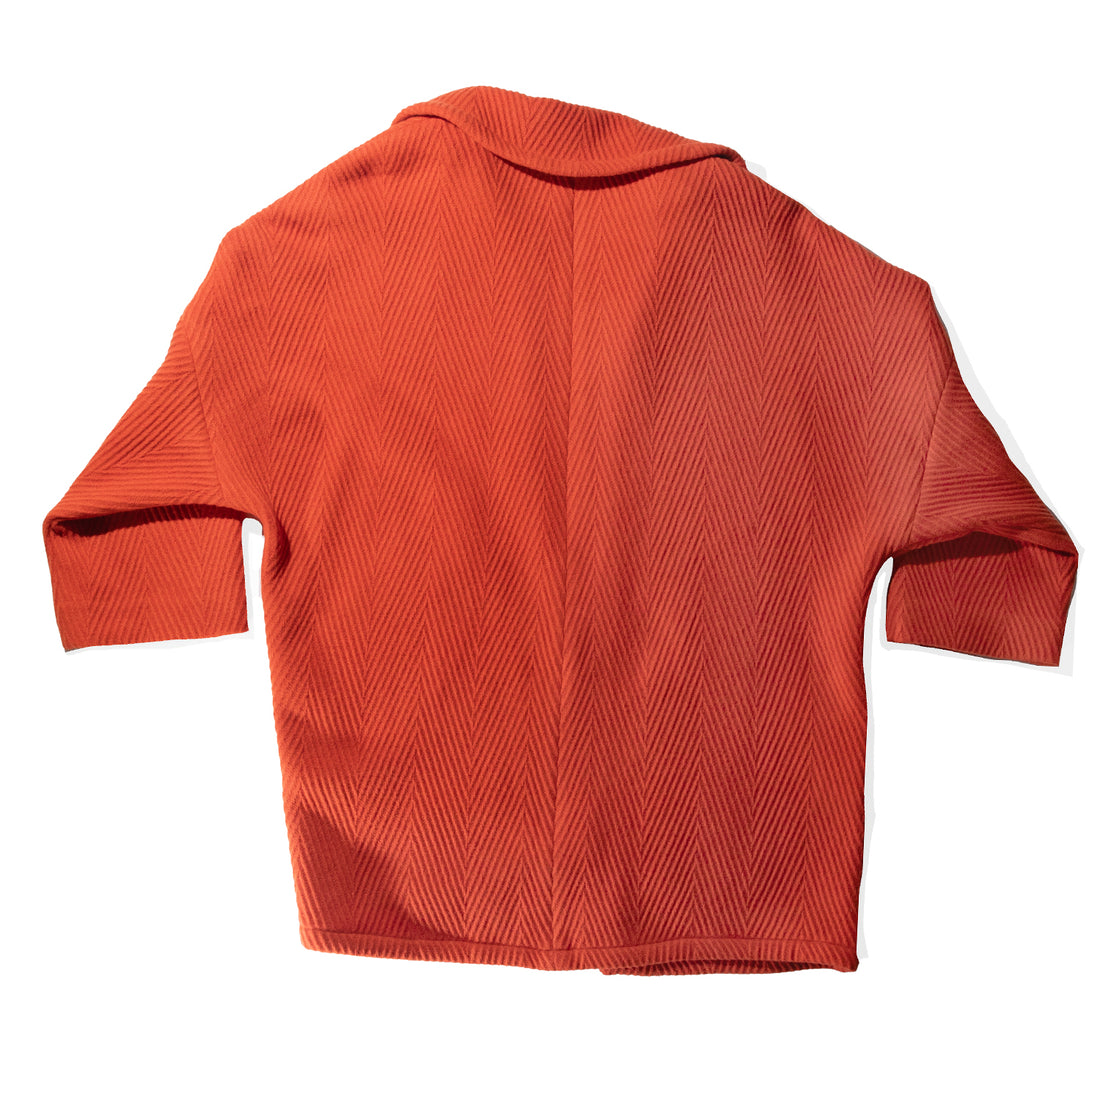 Rachel Comey Husk Coat in Orange